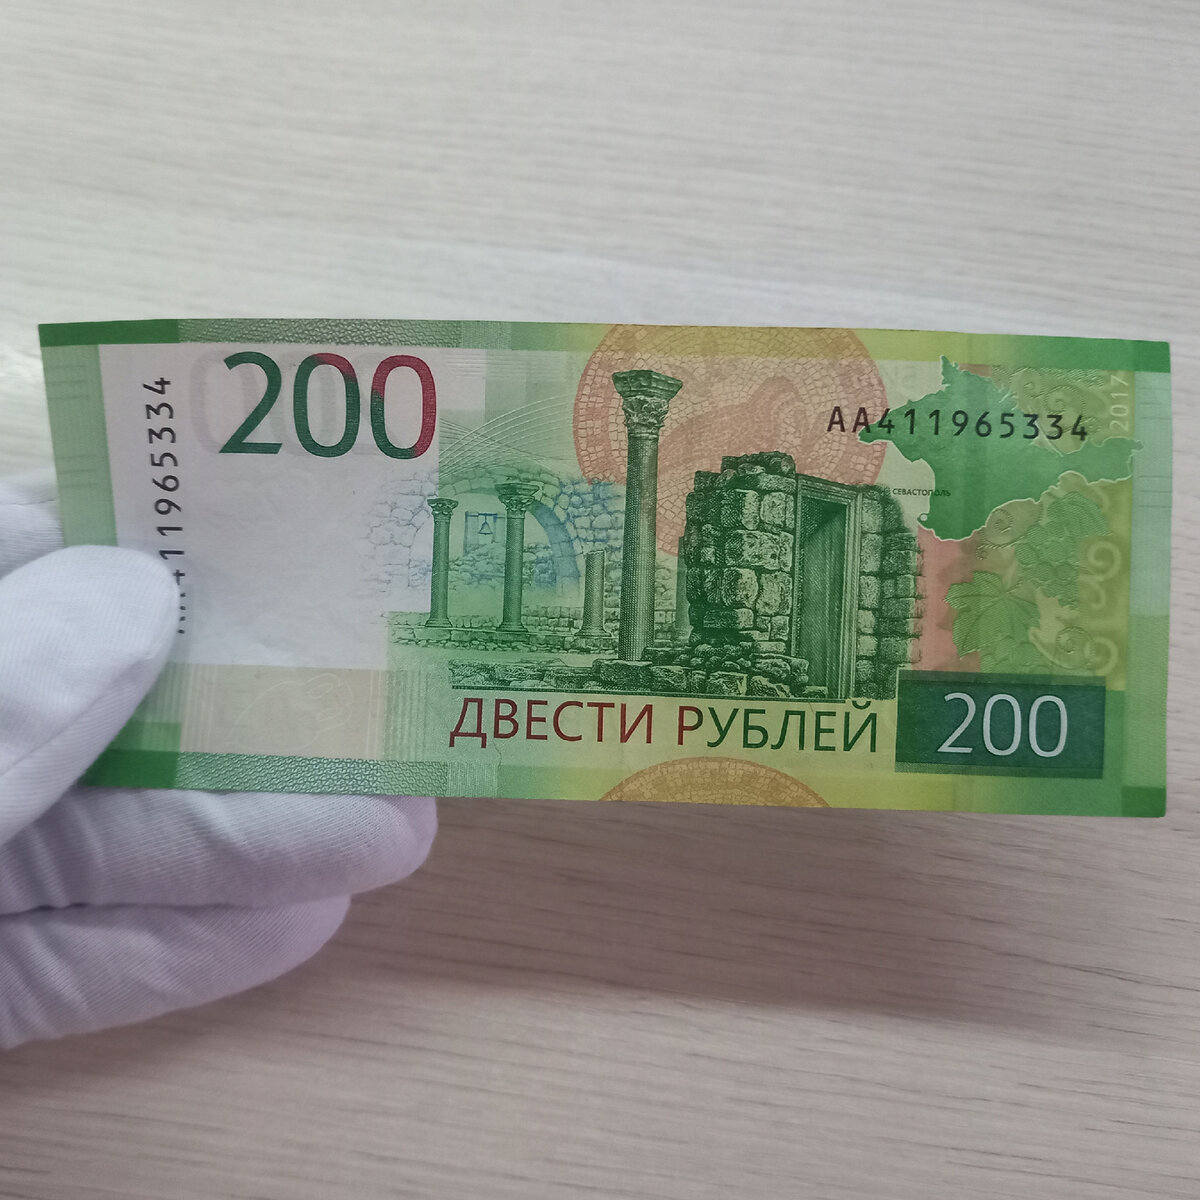 200 рублей 2019. 200 Рублей банкнота. 200 Рублей бумажные. 200 Руб новые. Новая 200 рублевая купюра.